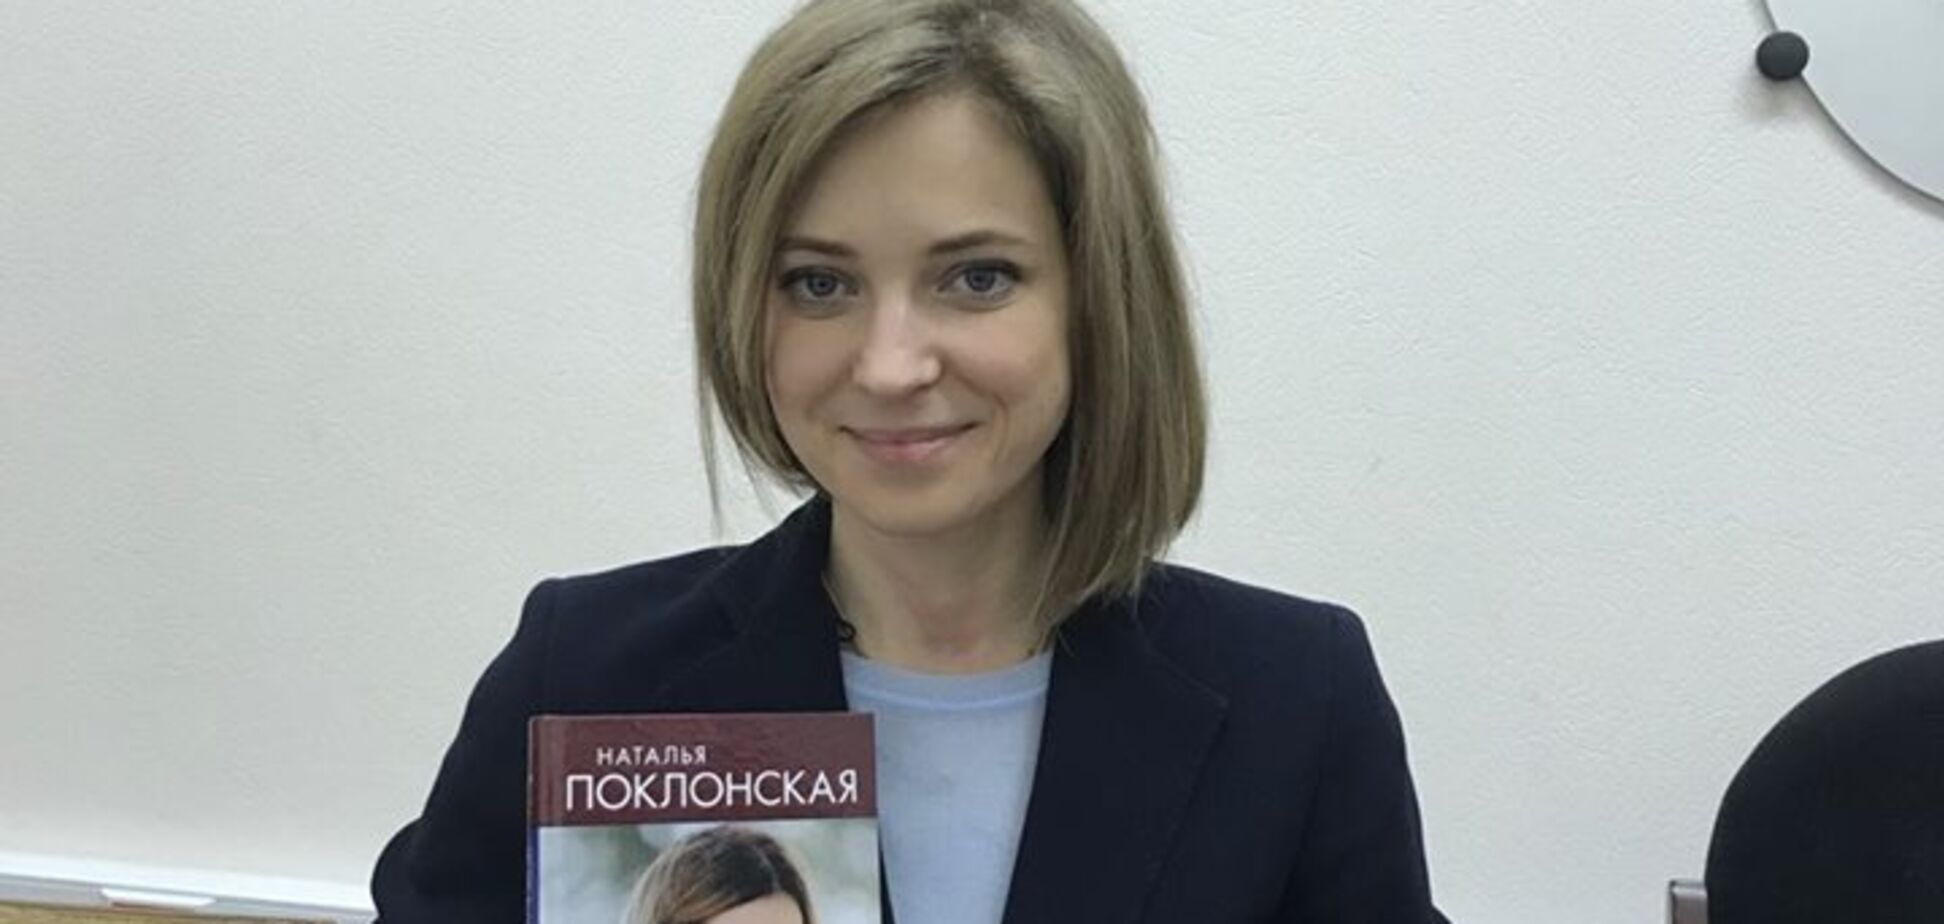 Пригодится для Гааги: Няша-Поклонская написала книгу о преступлениях в Крыму